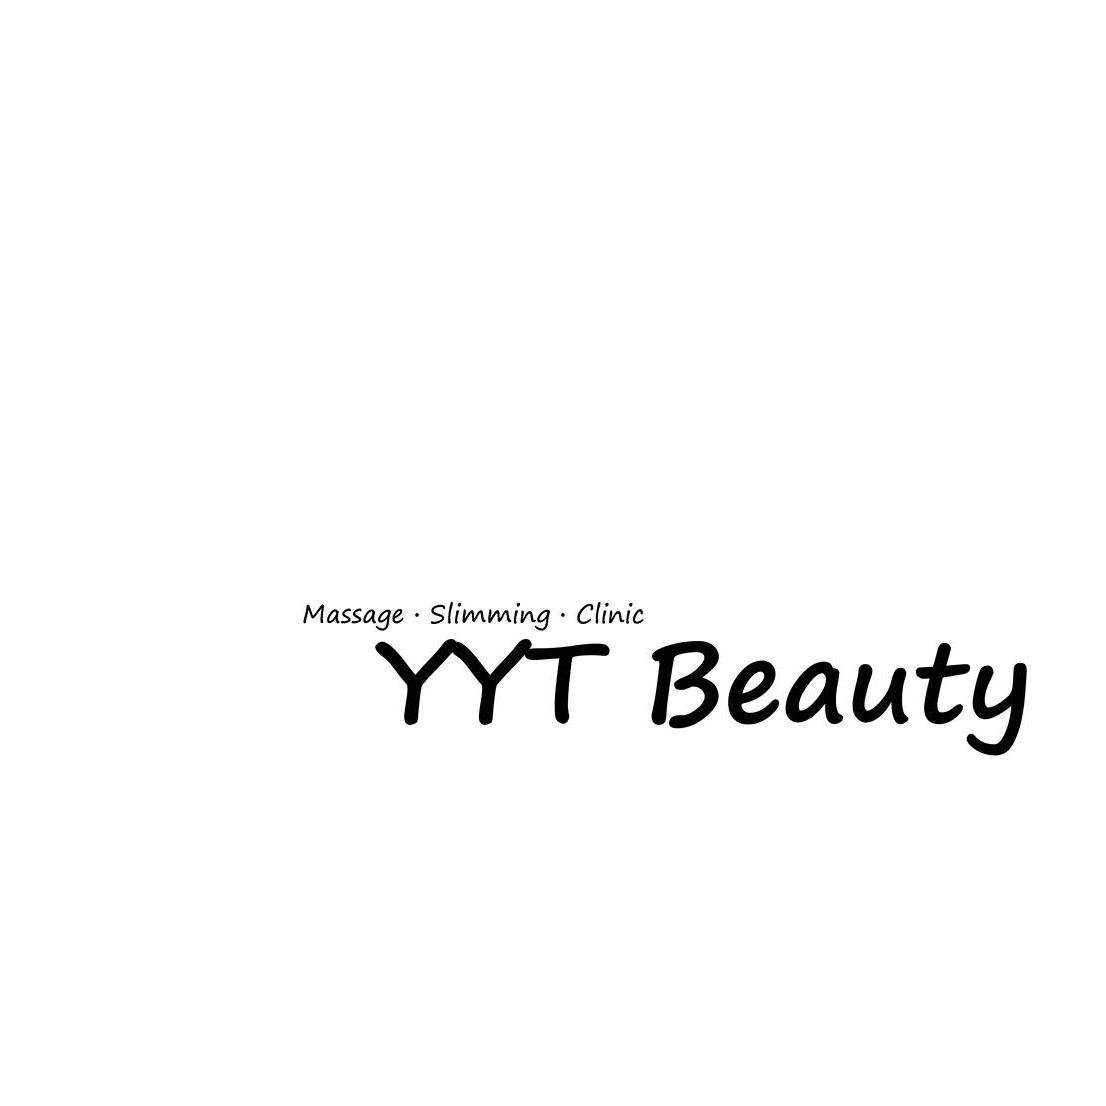 光学美容: YYT Beauty (旺角)